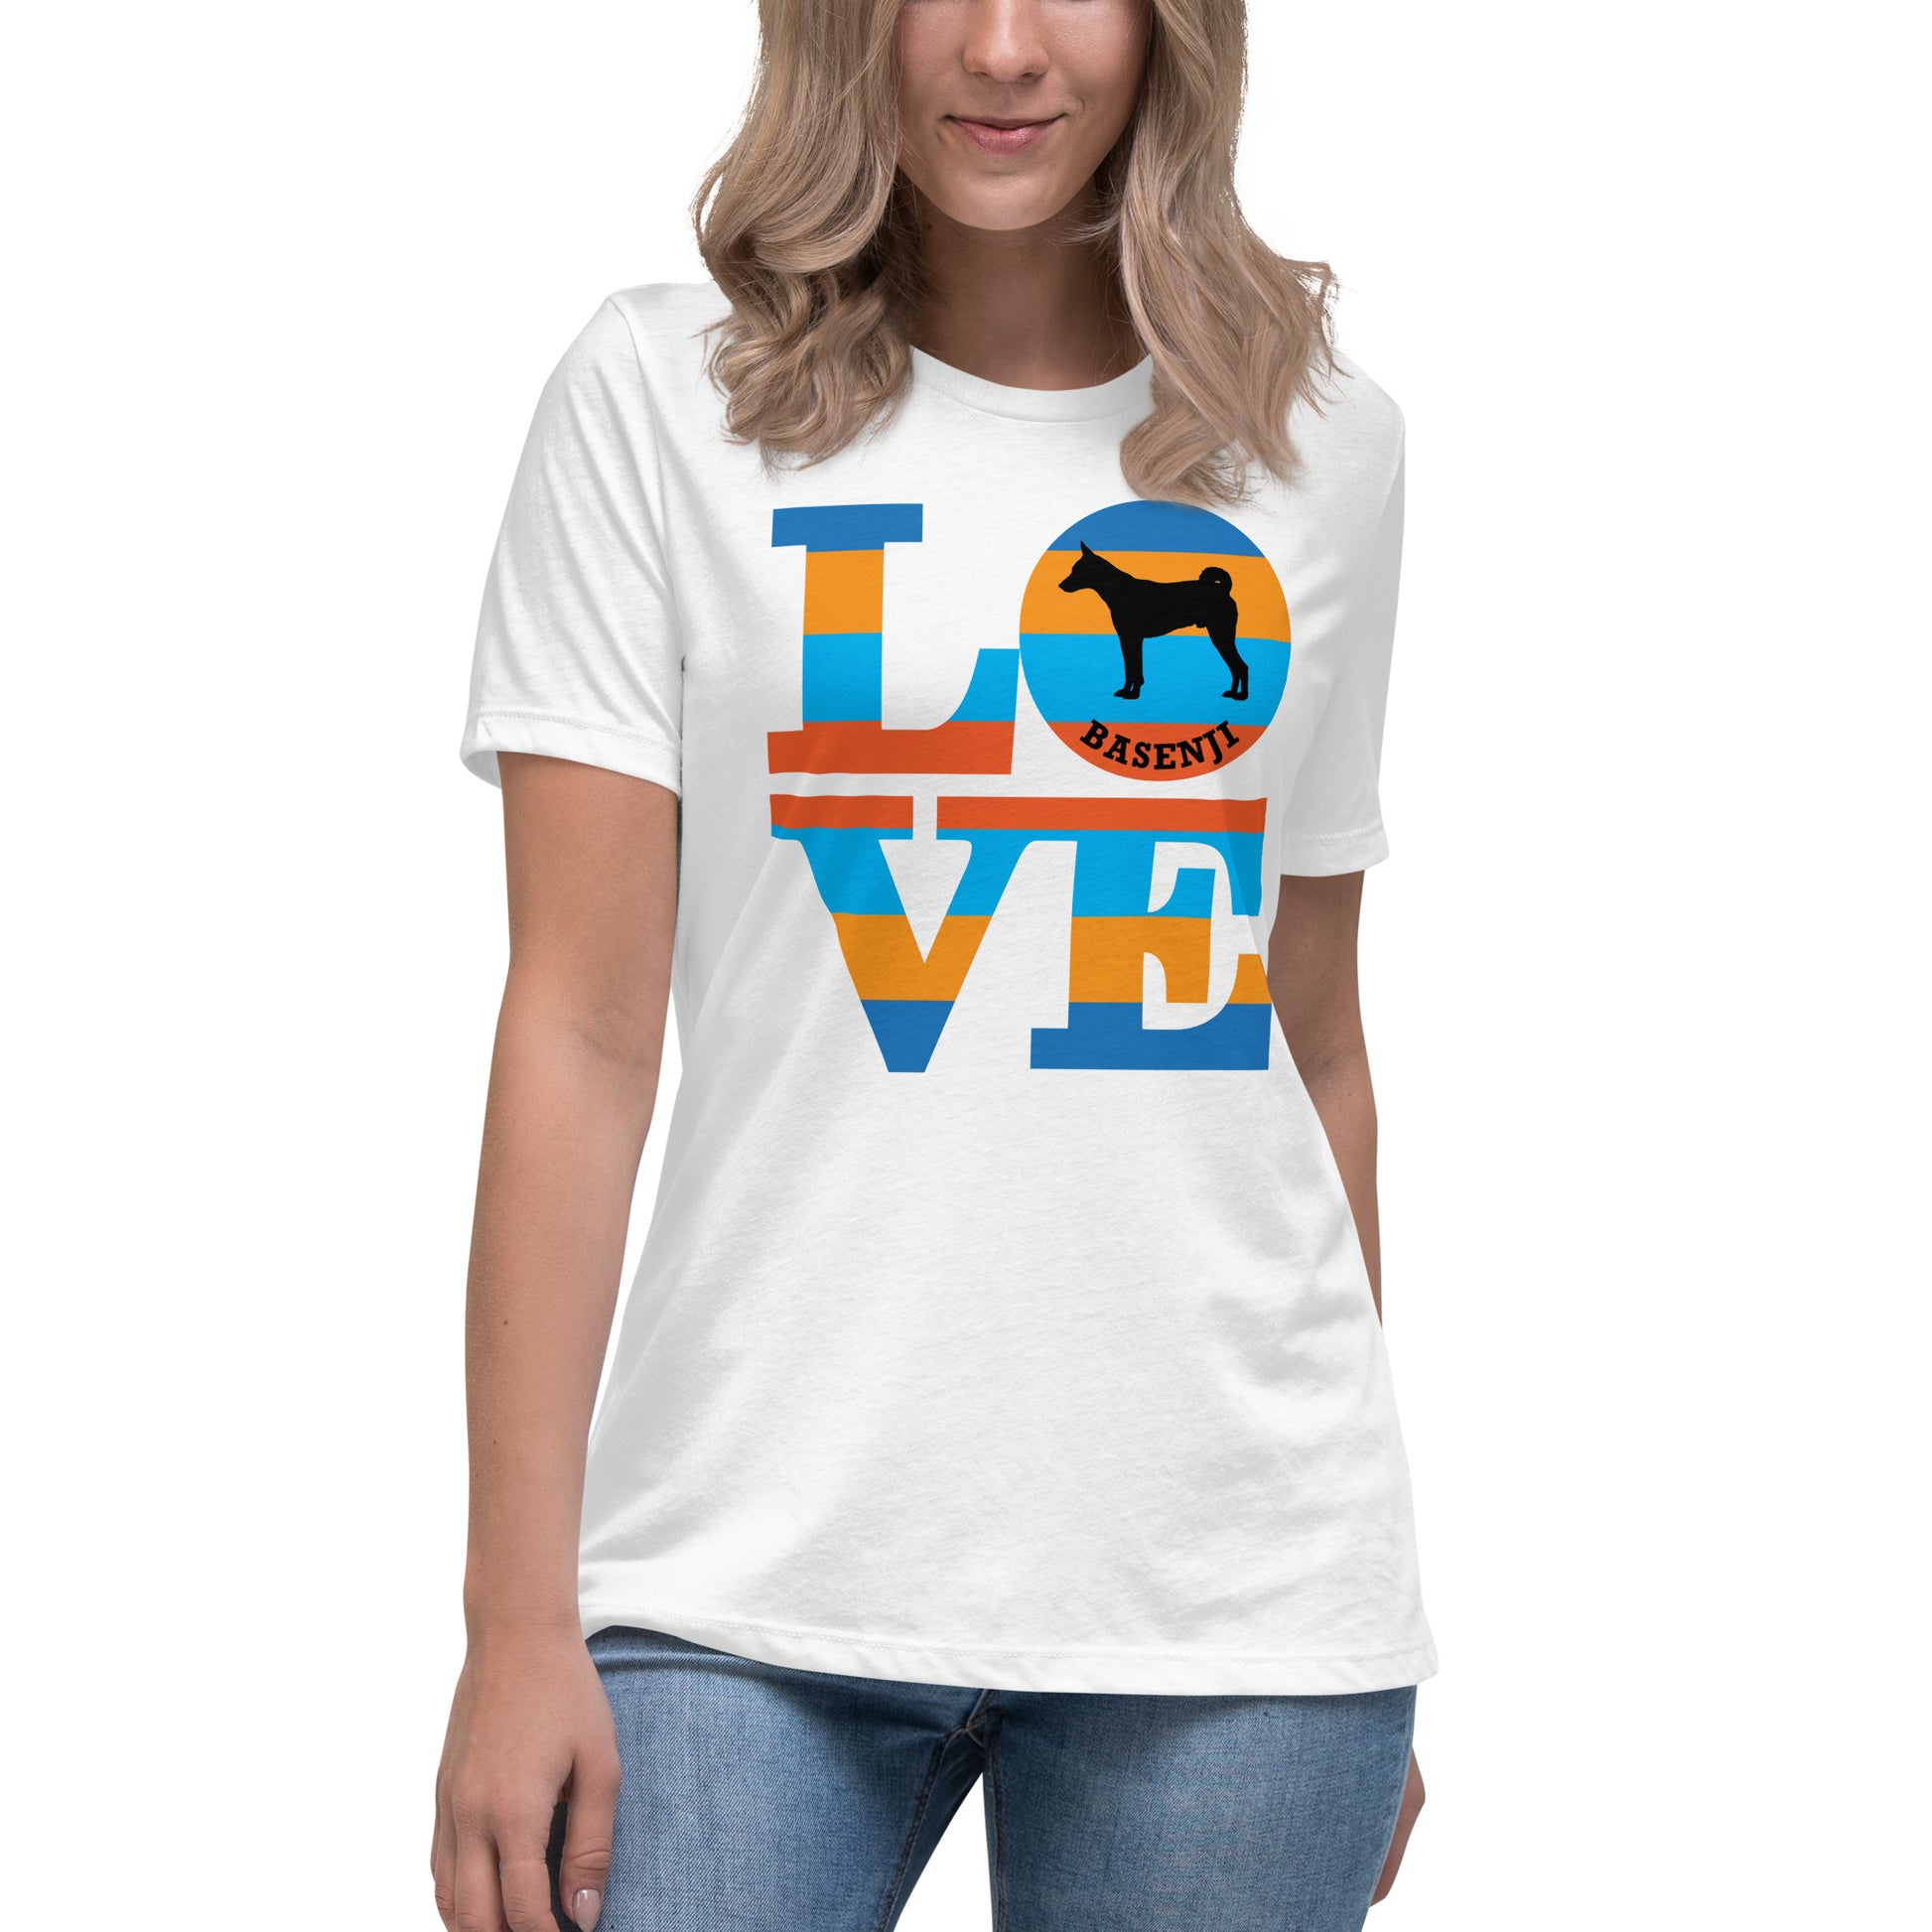 Basenji Love women’s white t-shirt by Dog Artistry.